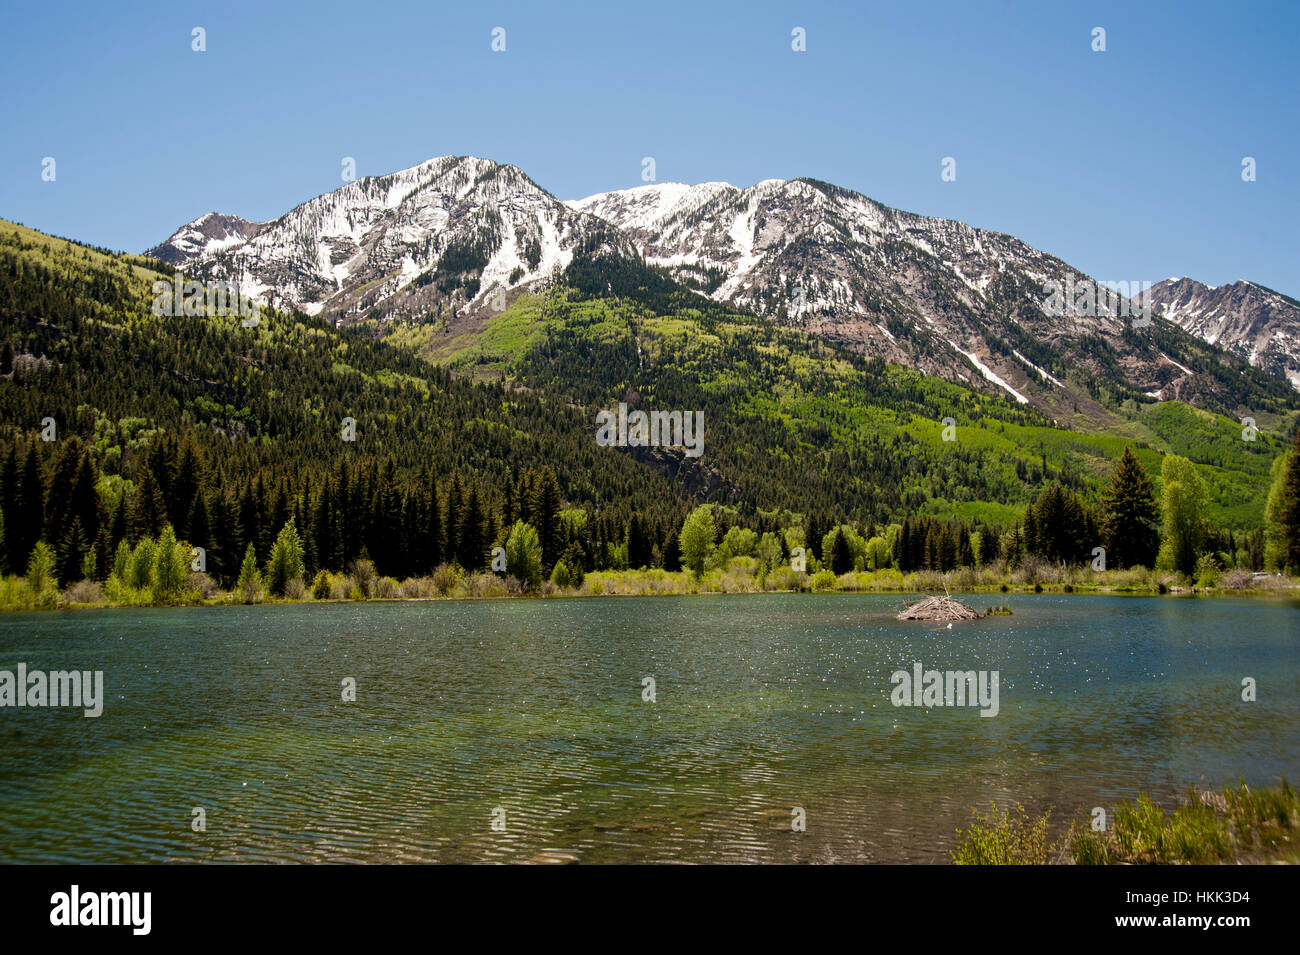 San Juan lago di montagna che mostra i riflessi della montagna con neve ancora visibili. Un castoro nido è mostrata al centro del lago.. Foto Stock